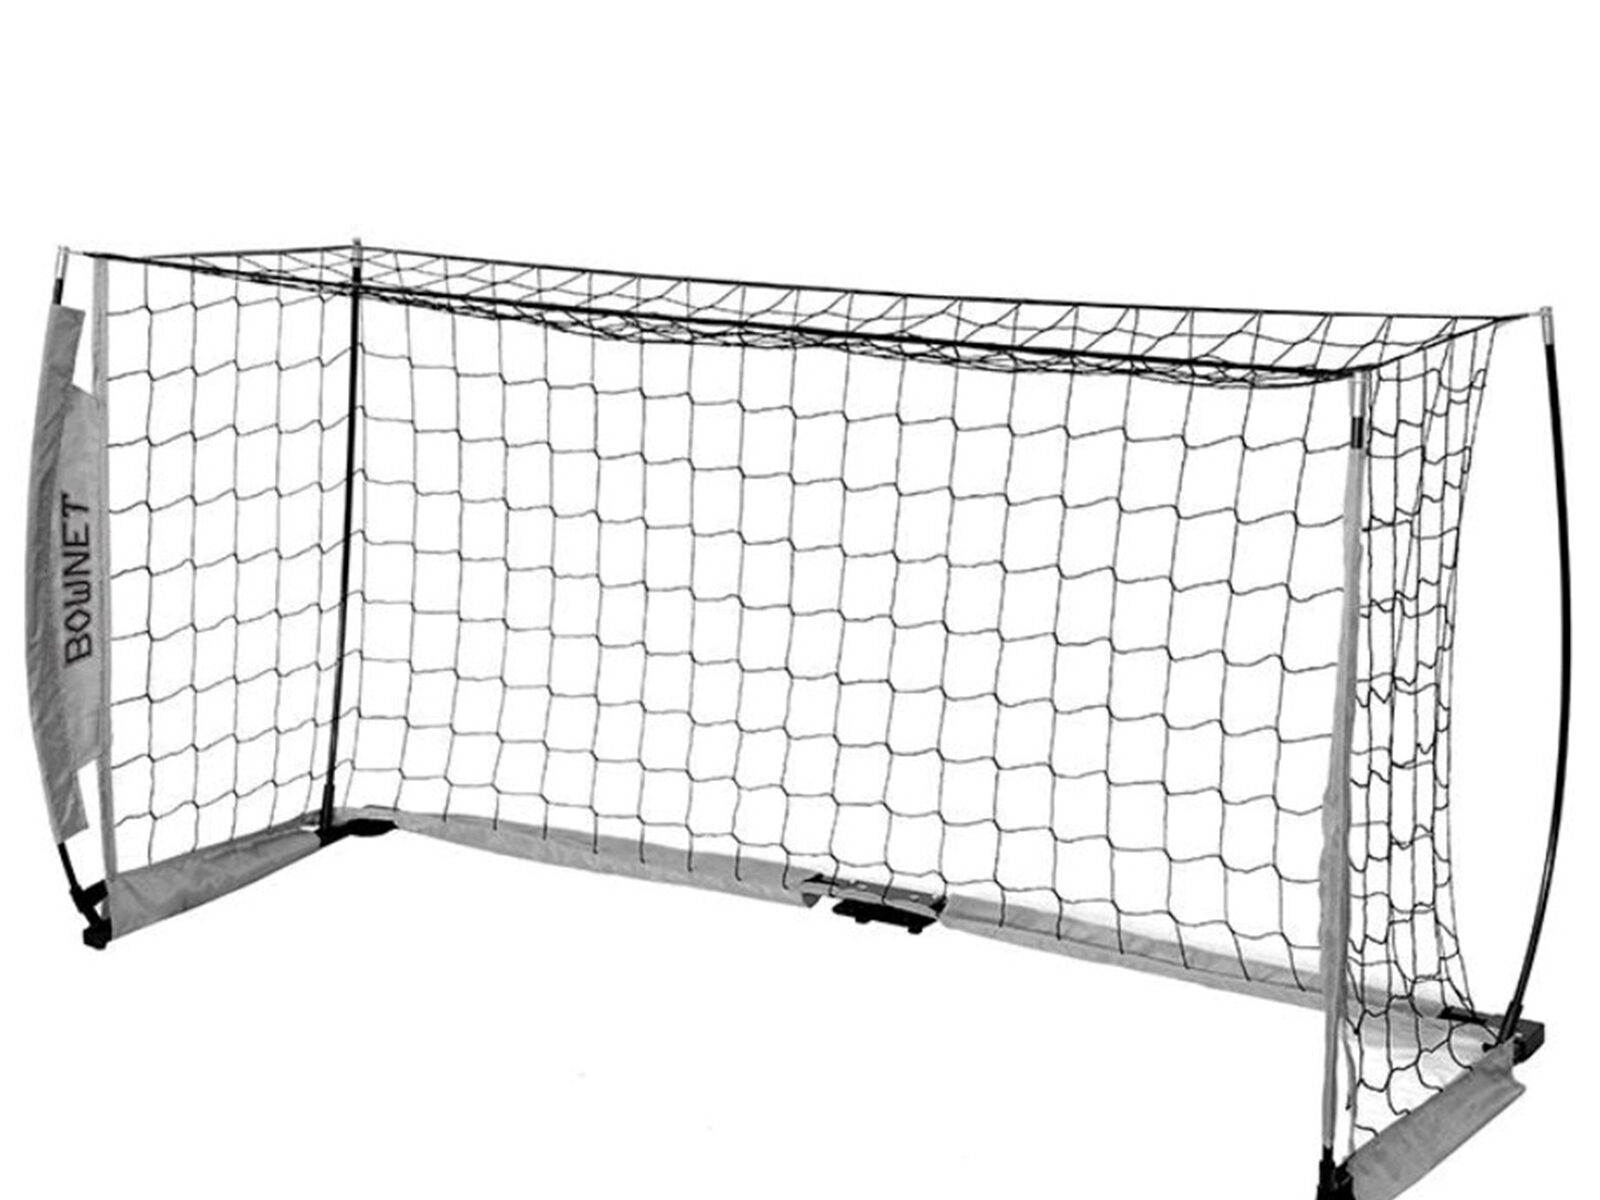 Bownet Soccer Goal, Soccer, 2m x 1m